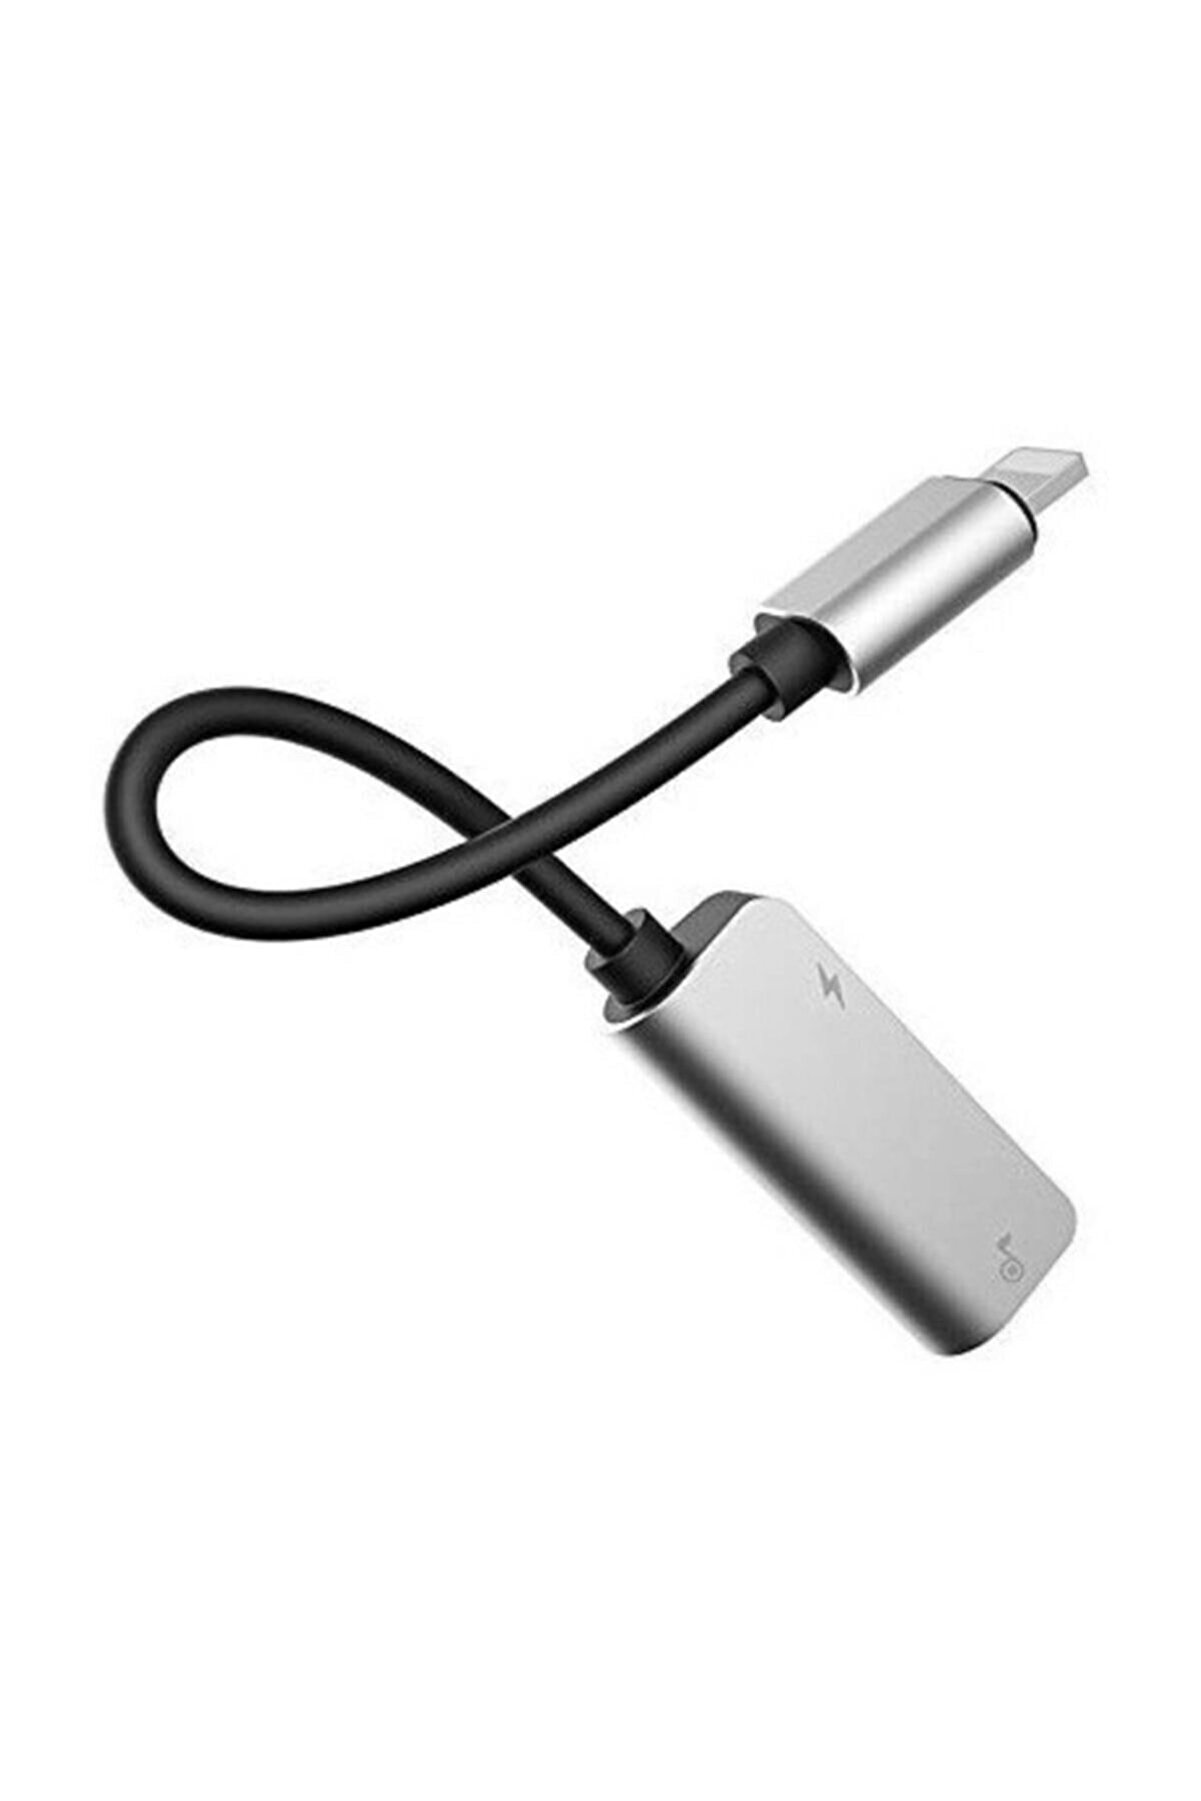 Saythink Apple Iphone Lightning 2in1 Aux 3.5 mm Kulaklık Dönüştürücü Şarj Girişli Adaptör Gümüş